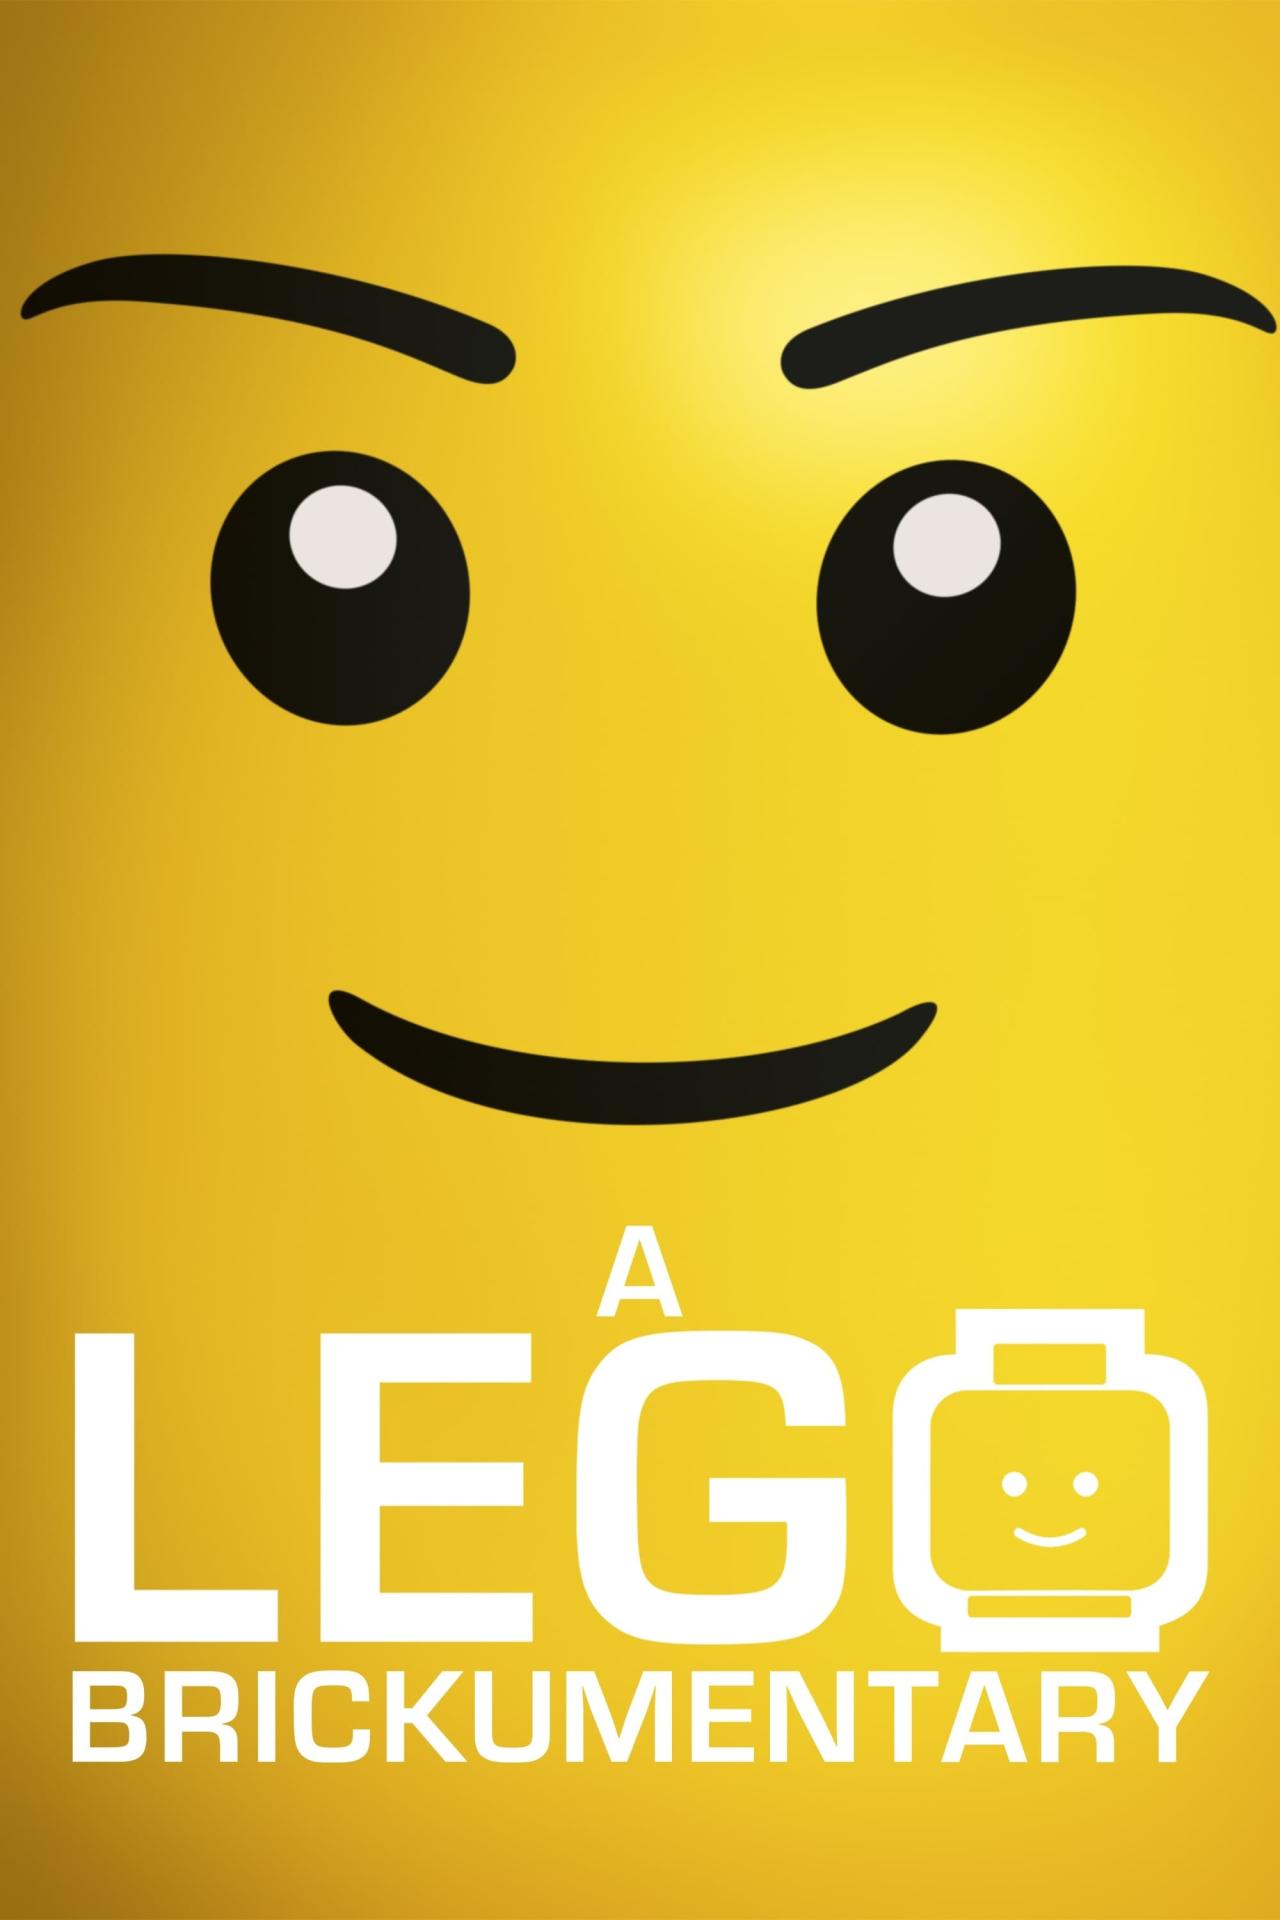 A LEGO Brickumentary est-il disponible sur Netflix ou autre ?